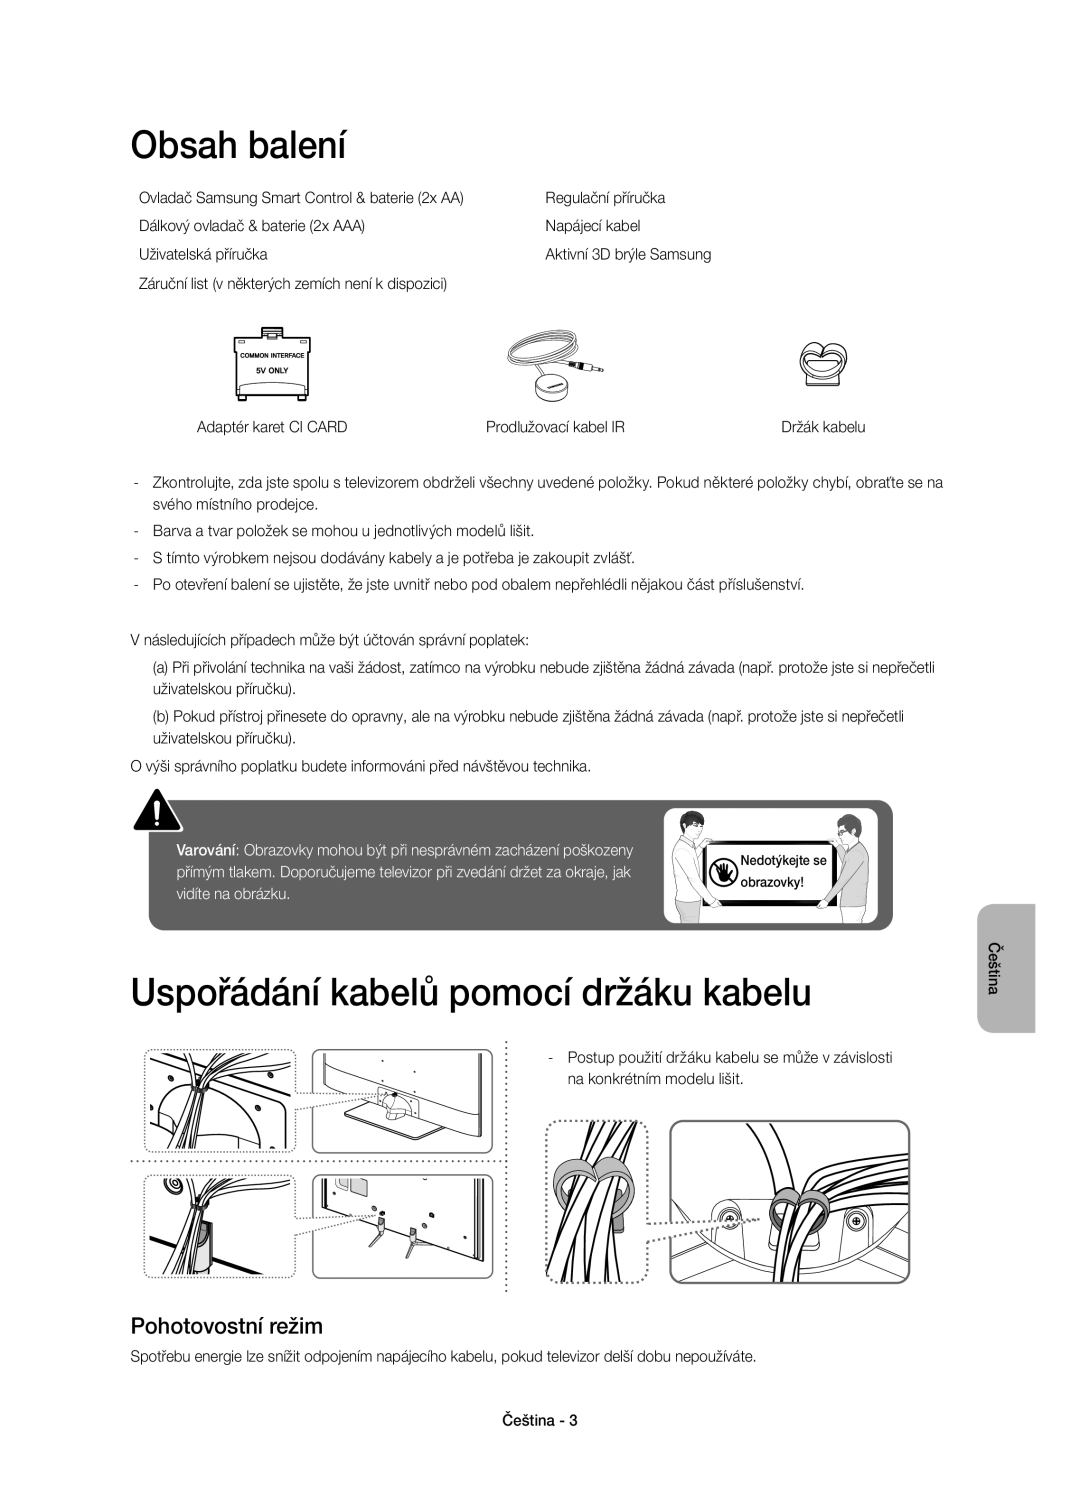 Samsung UE55H6500SLXXH manual Obsah balení, Uspořádání kabelů pomocí držáku kabelu, Pohotovostní režim, vidíte na obrázku 